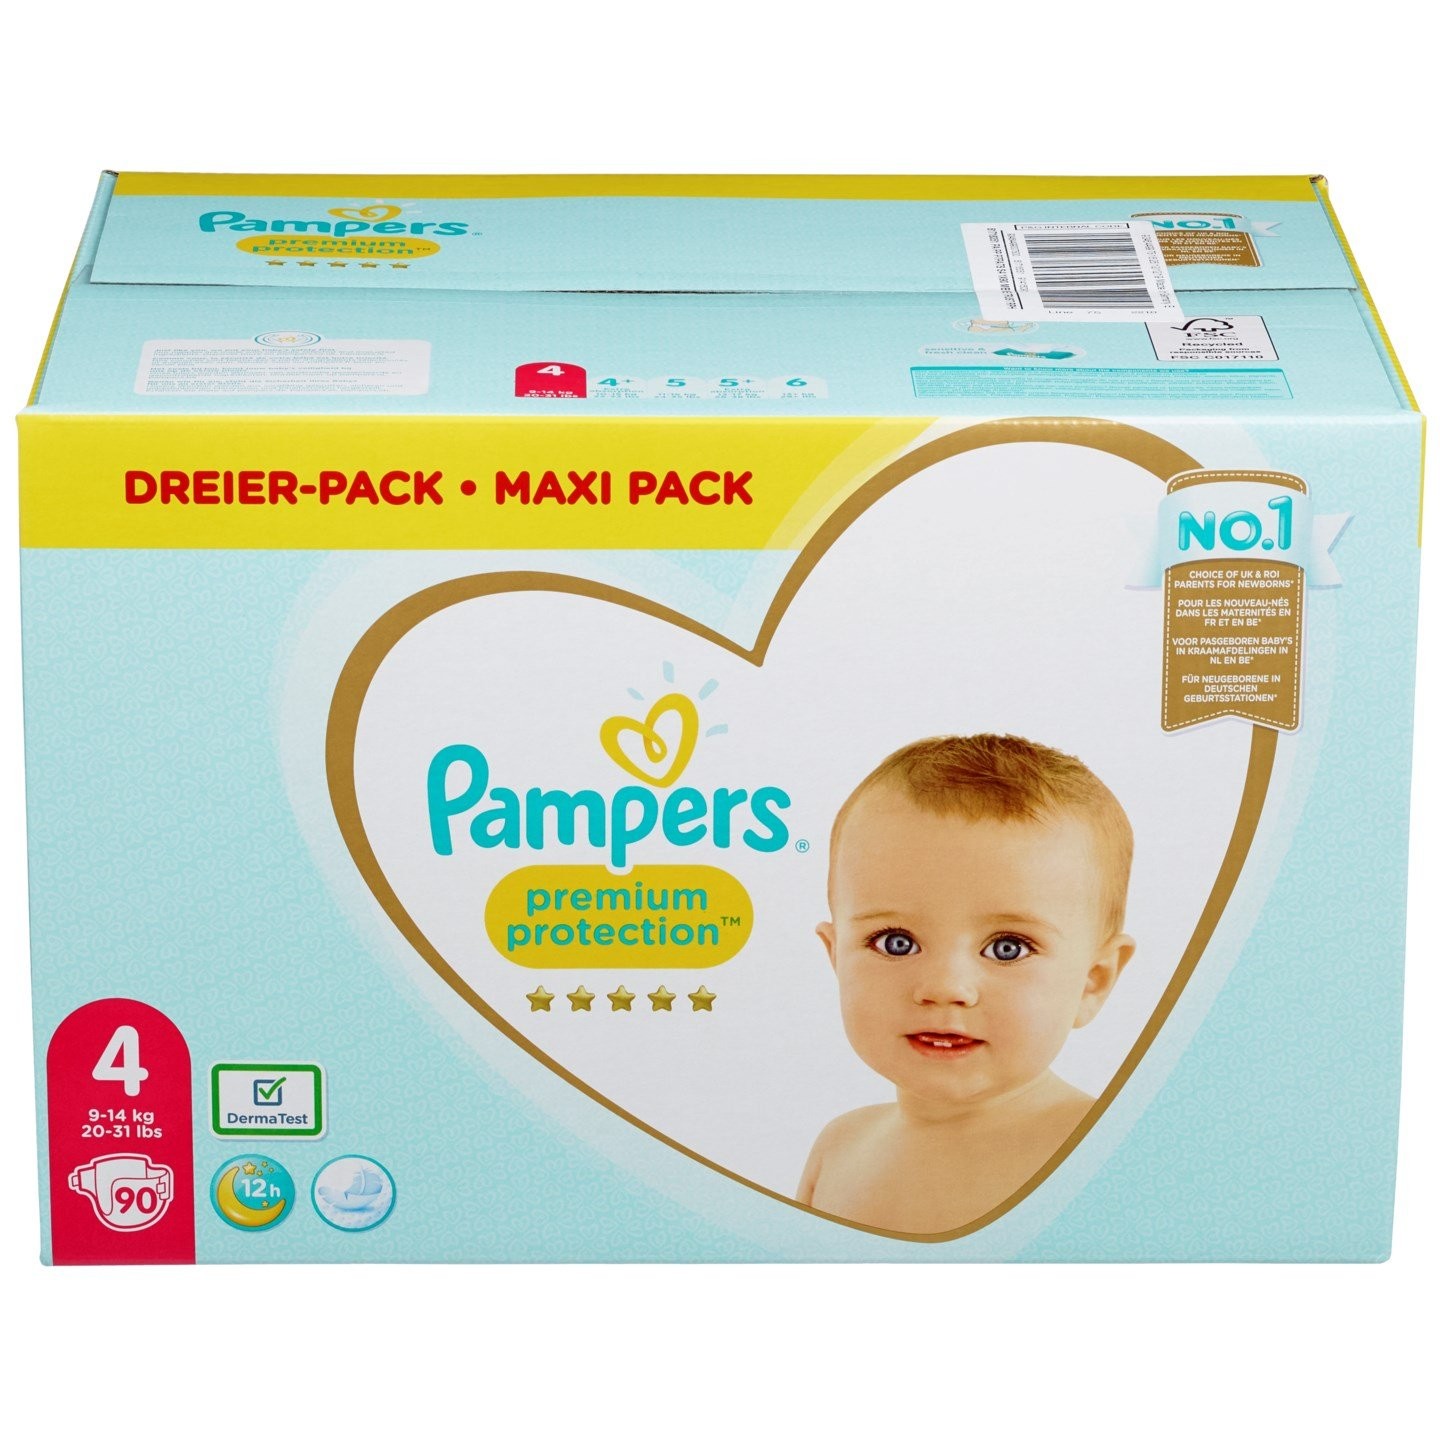 Pampers Premium Protection Dreier Pack -Maxi Pack Taille 4 De 90 Couches  Durée 12h